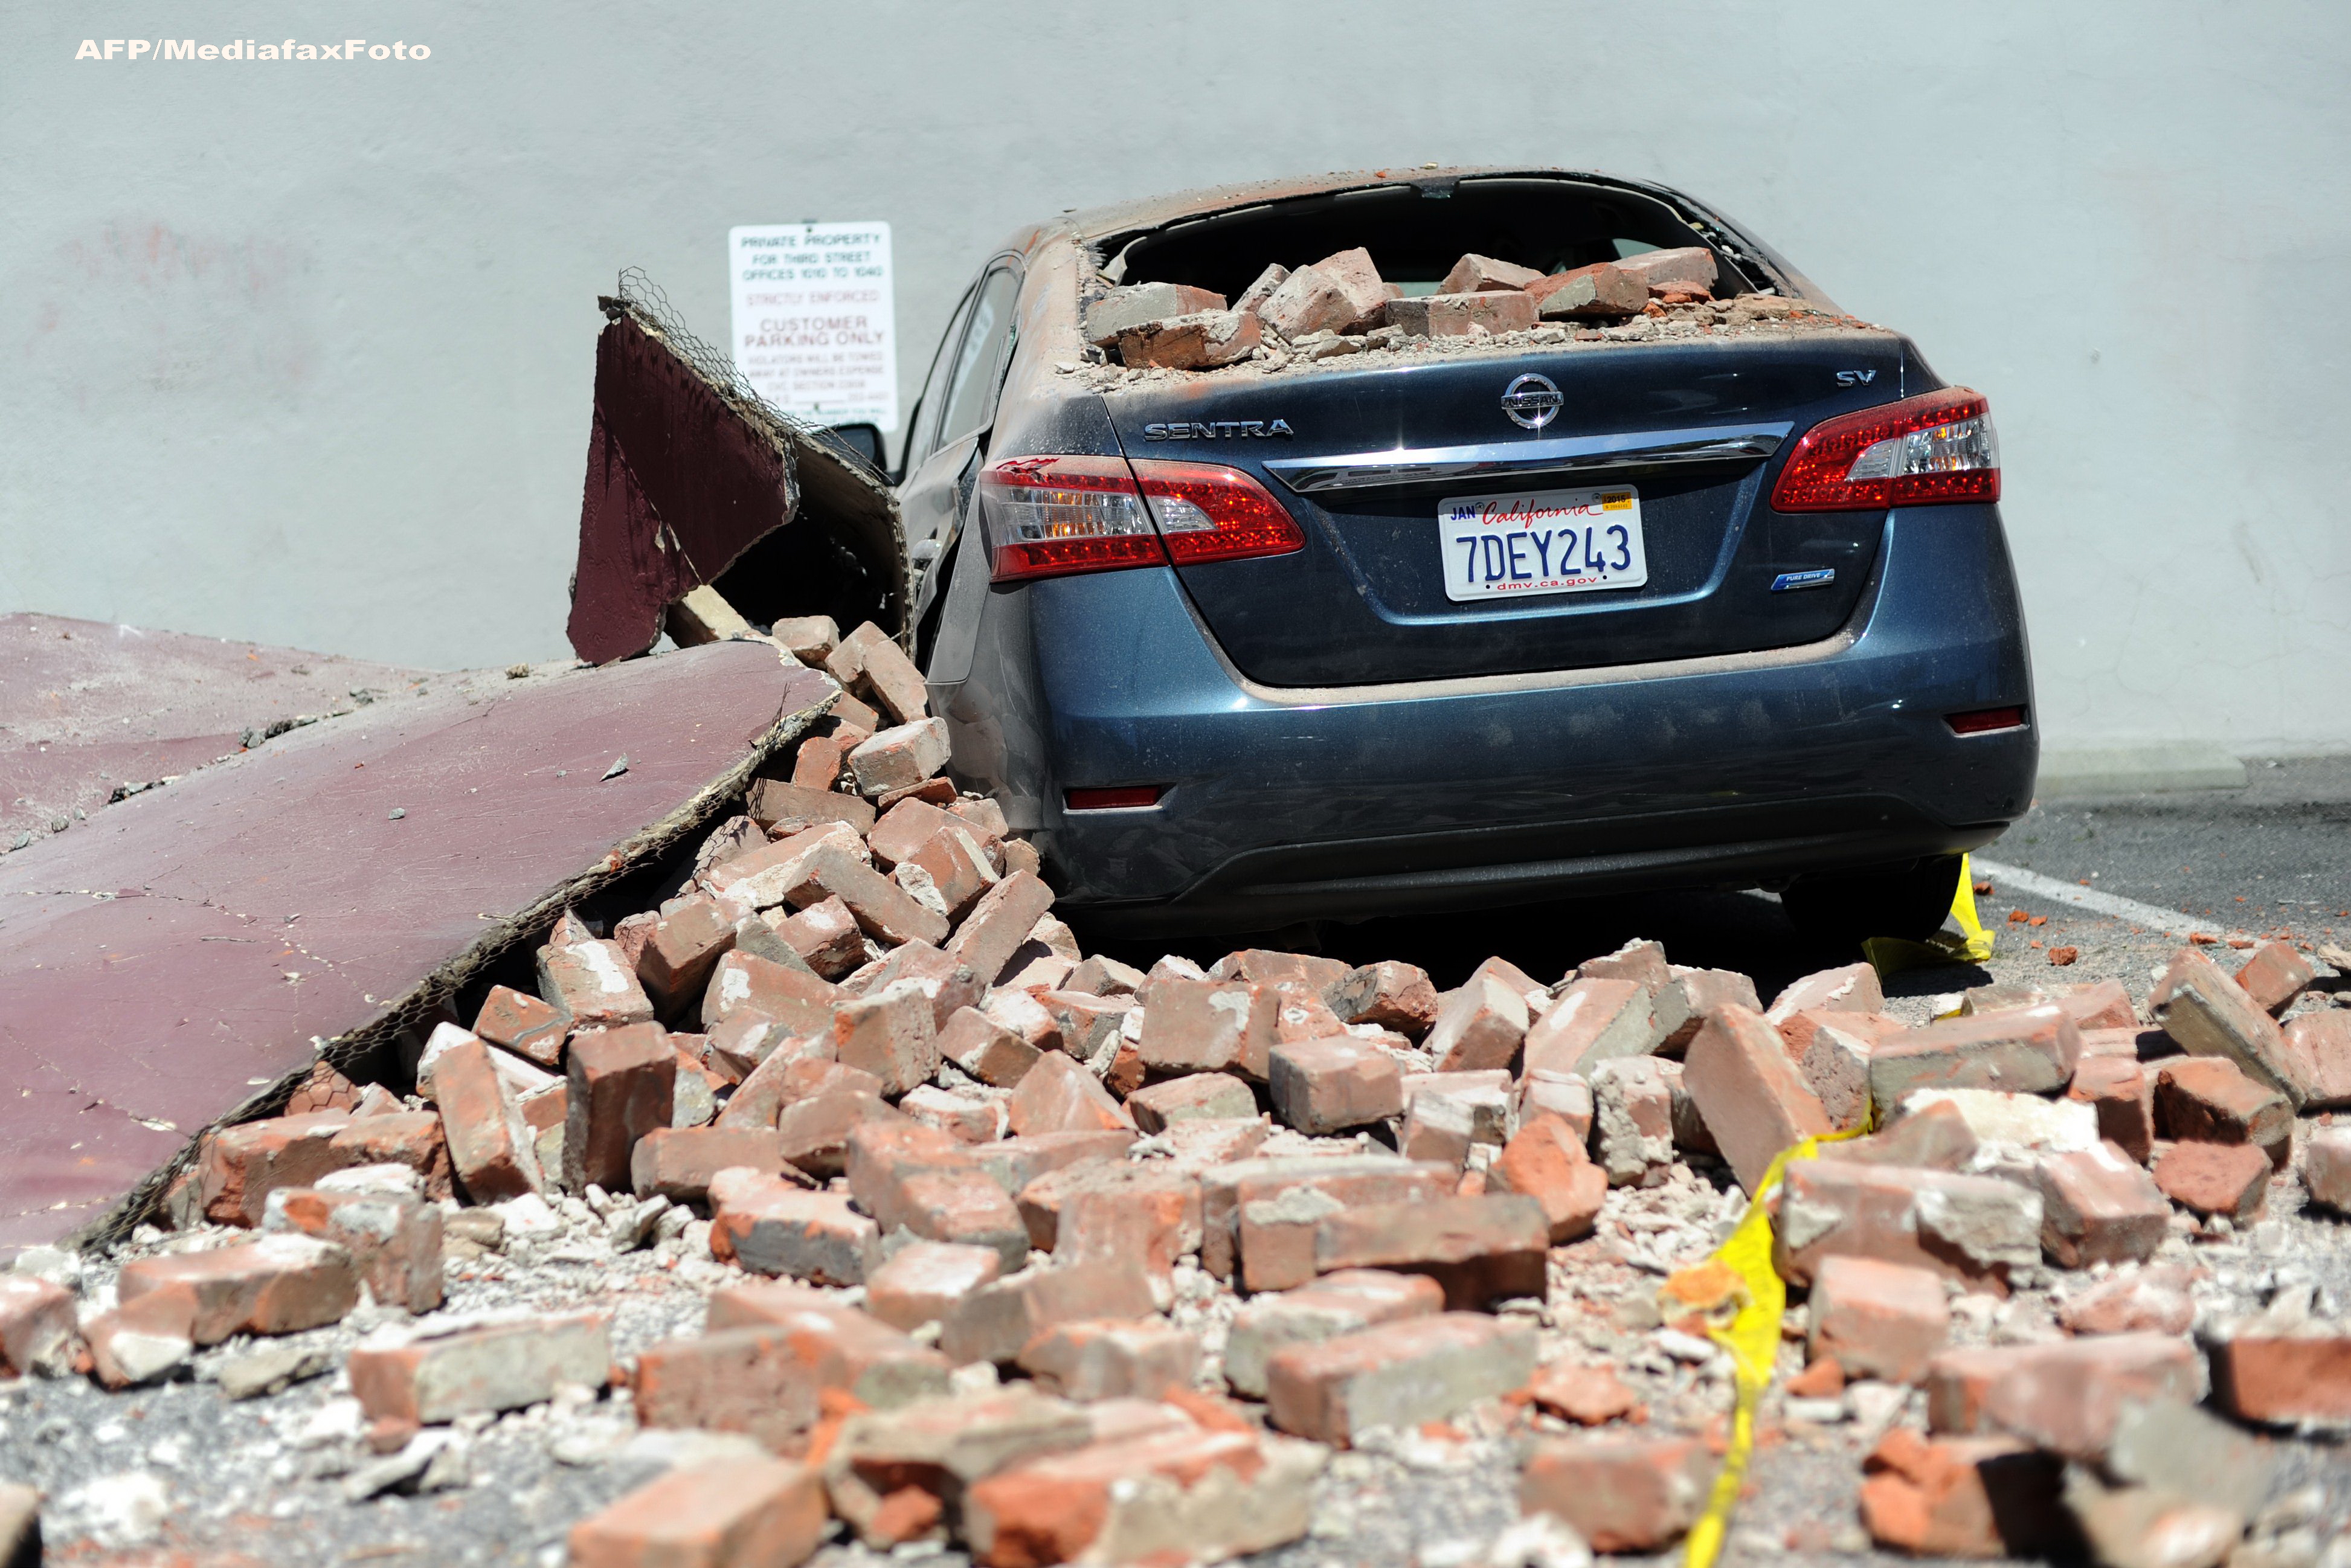 Stare de urgenta in California, dupa cel mai puternic cutremur din ultimii 25 de ani. FOTO si VIDEO - Imaginea 7